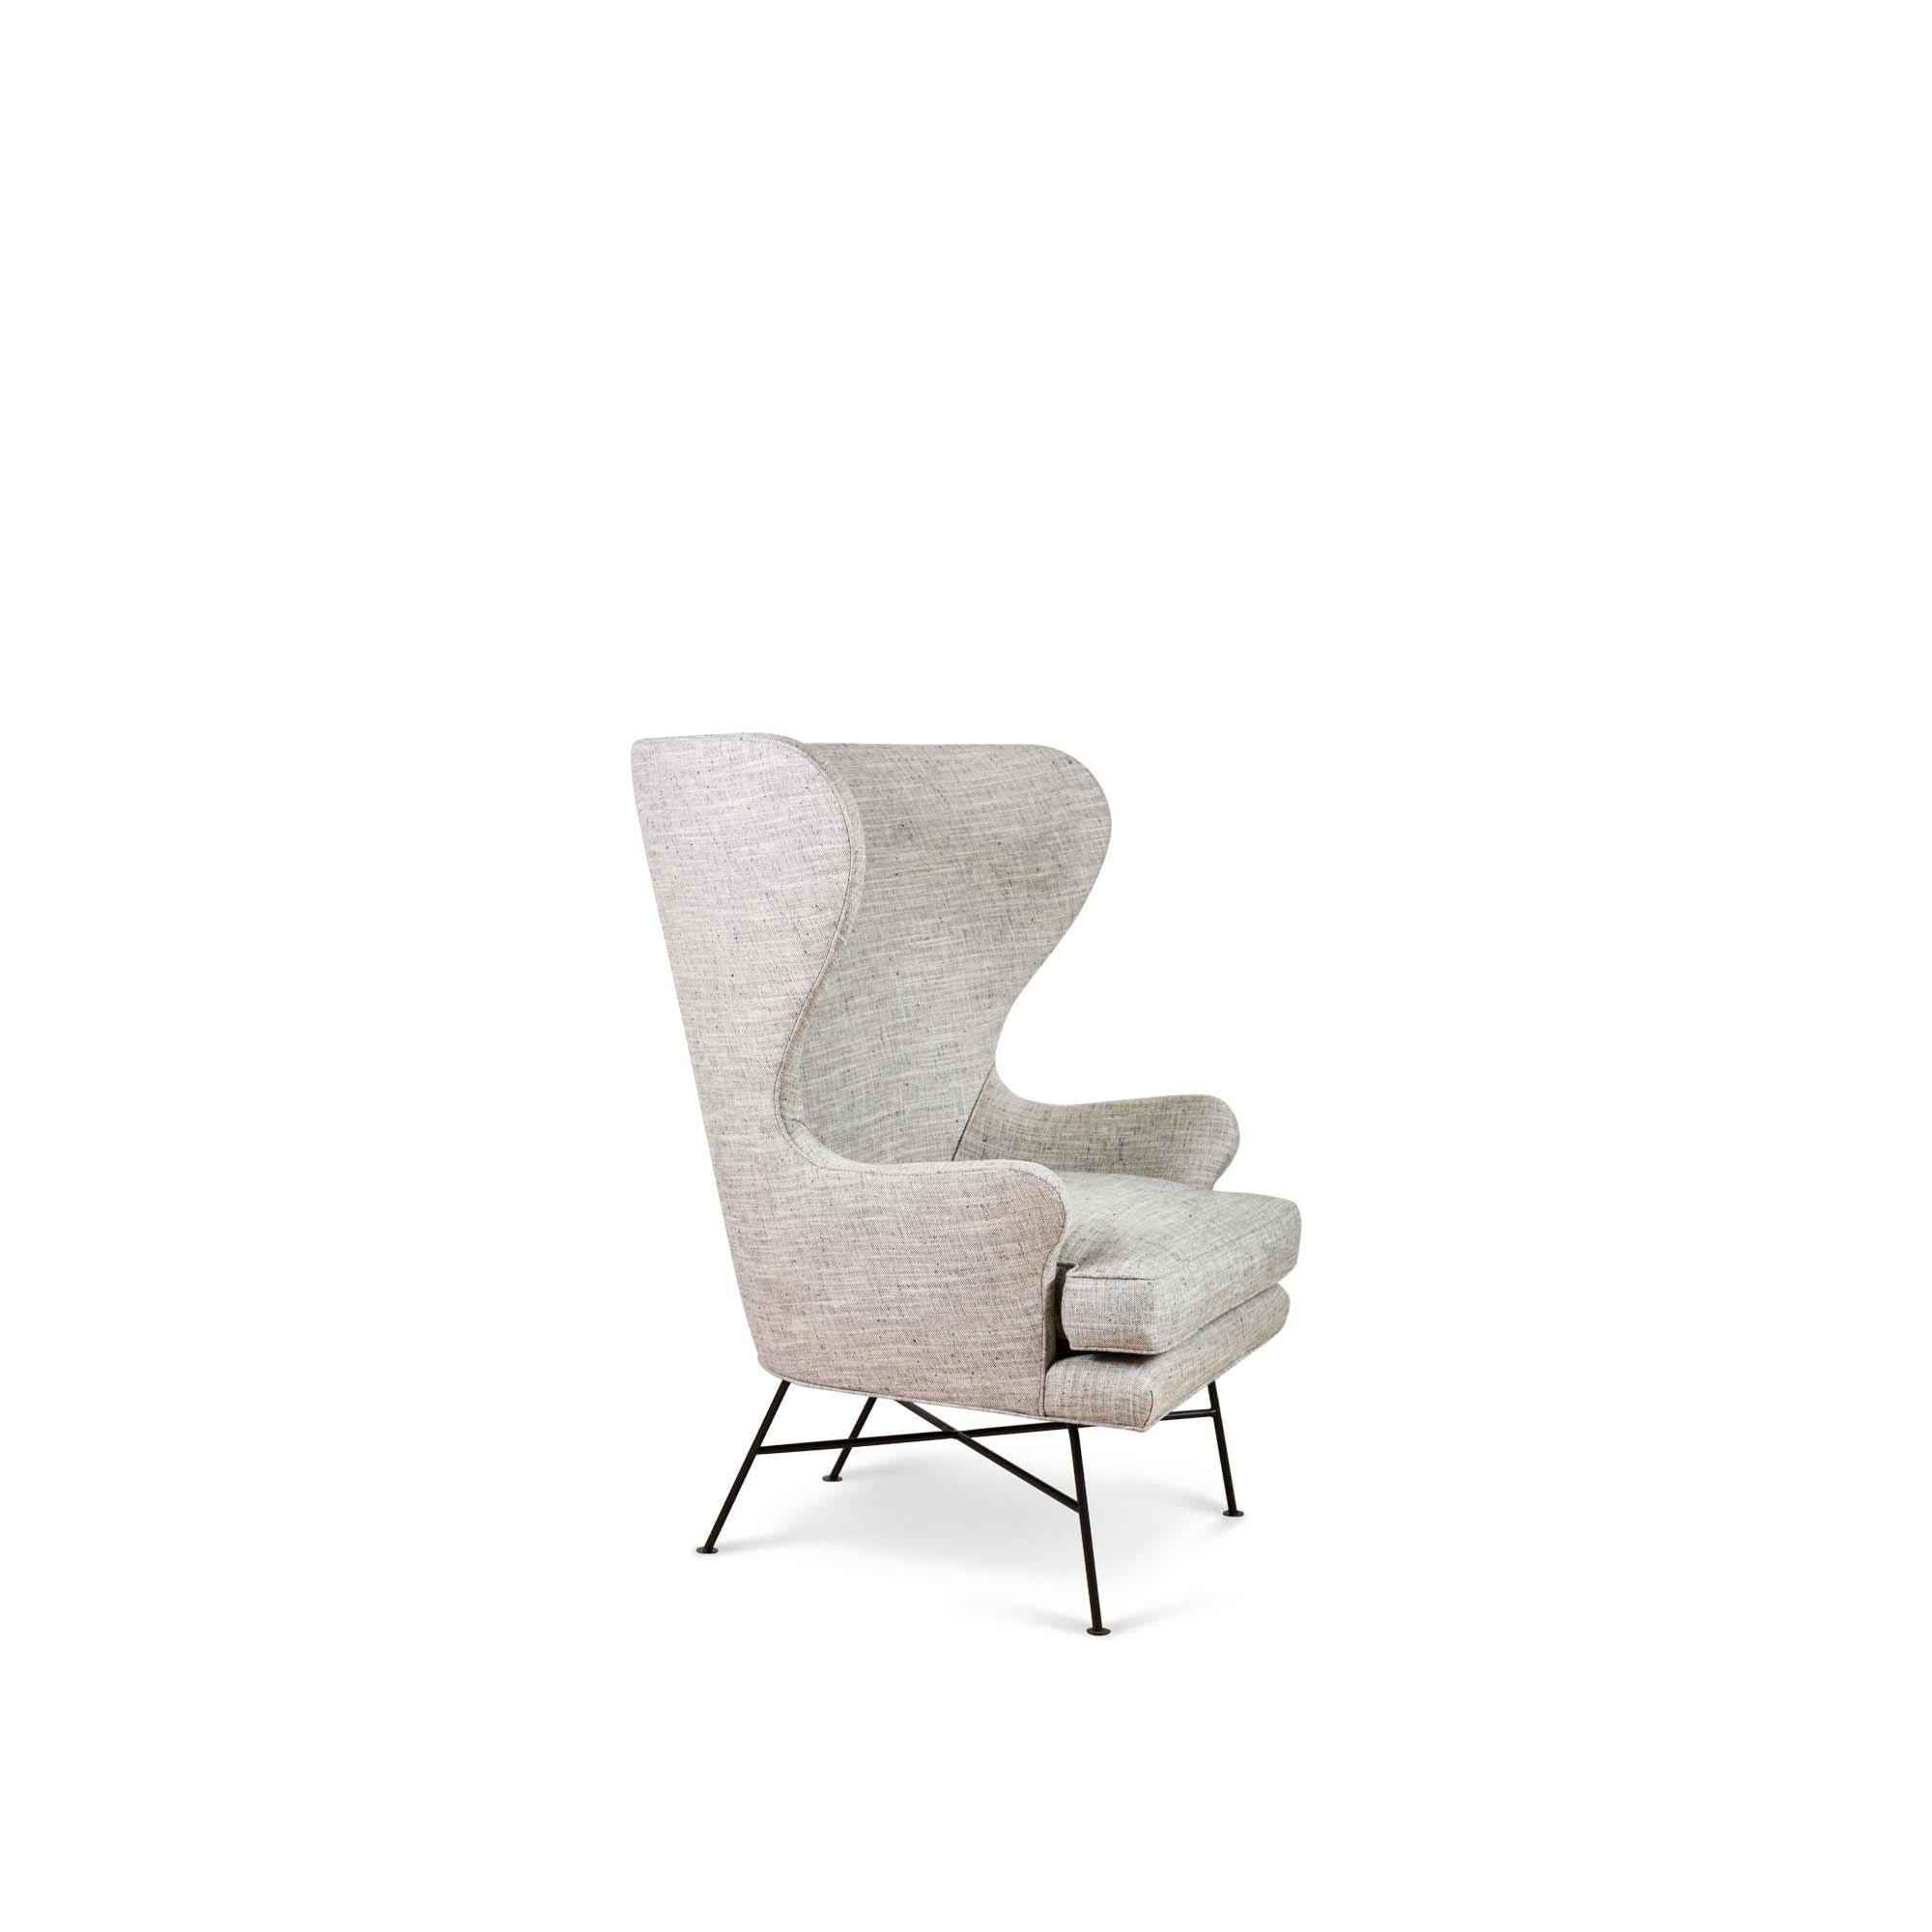 Der Highland Wingback Chair ist ein skulpturaler, breiter Stuhl mit minimalem Metallgestell und daunengepolstertem Sitzkissen.

Die Lawson-Fenning Collection'S wird in Los Angeles, Kalifornien, entworfen und handgefertigt. Wenden Sie sich an uns, um